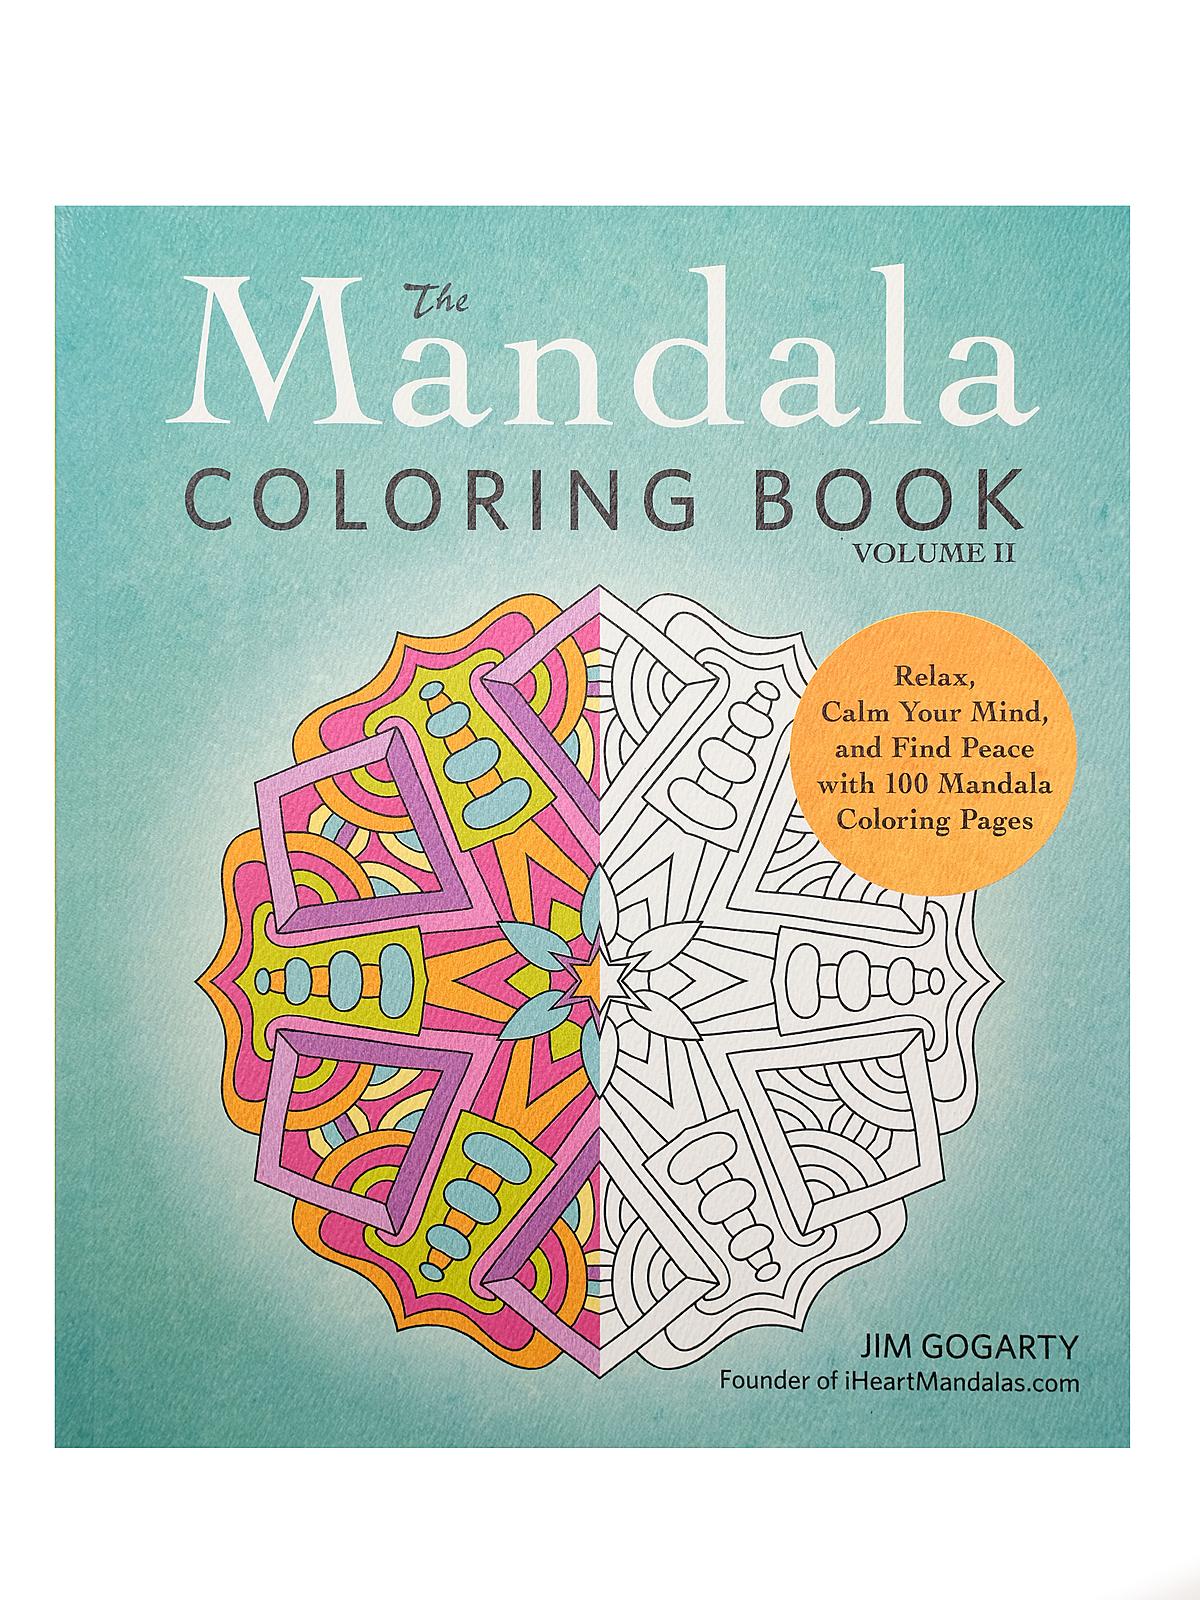 The Mandala Coloring Book Volume 2